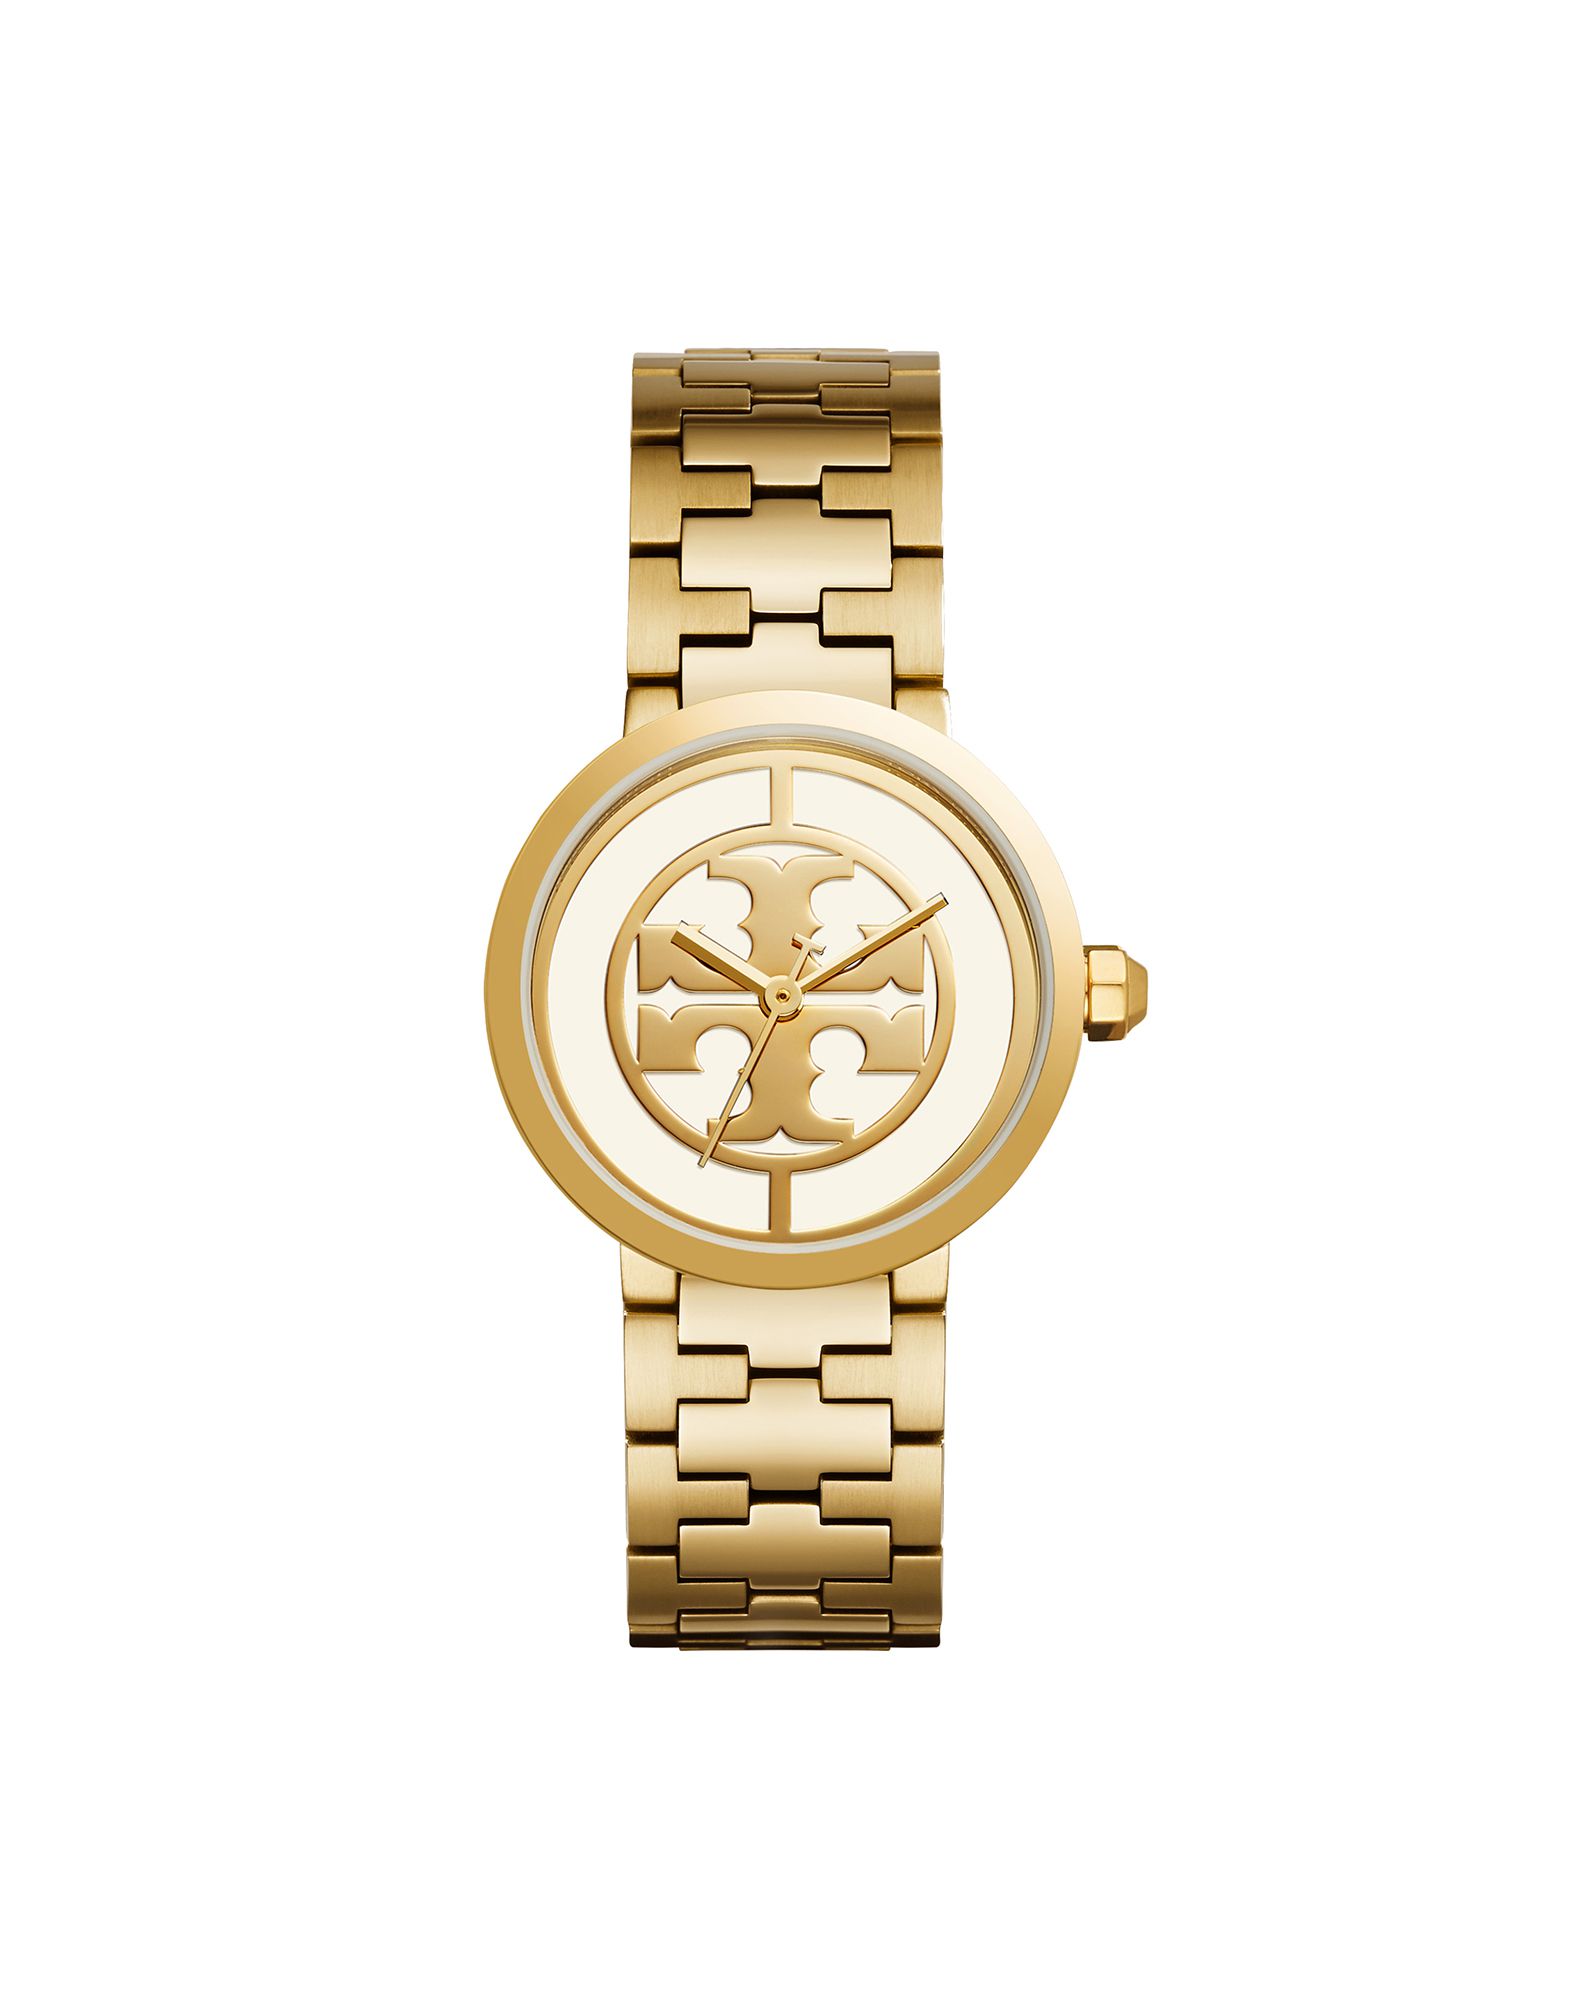 《送料無料》TORY BURCH レディース 腕時計 ゴールド ステンレススチール THE REVA